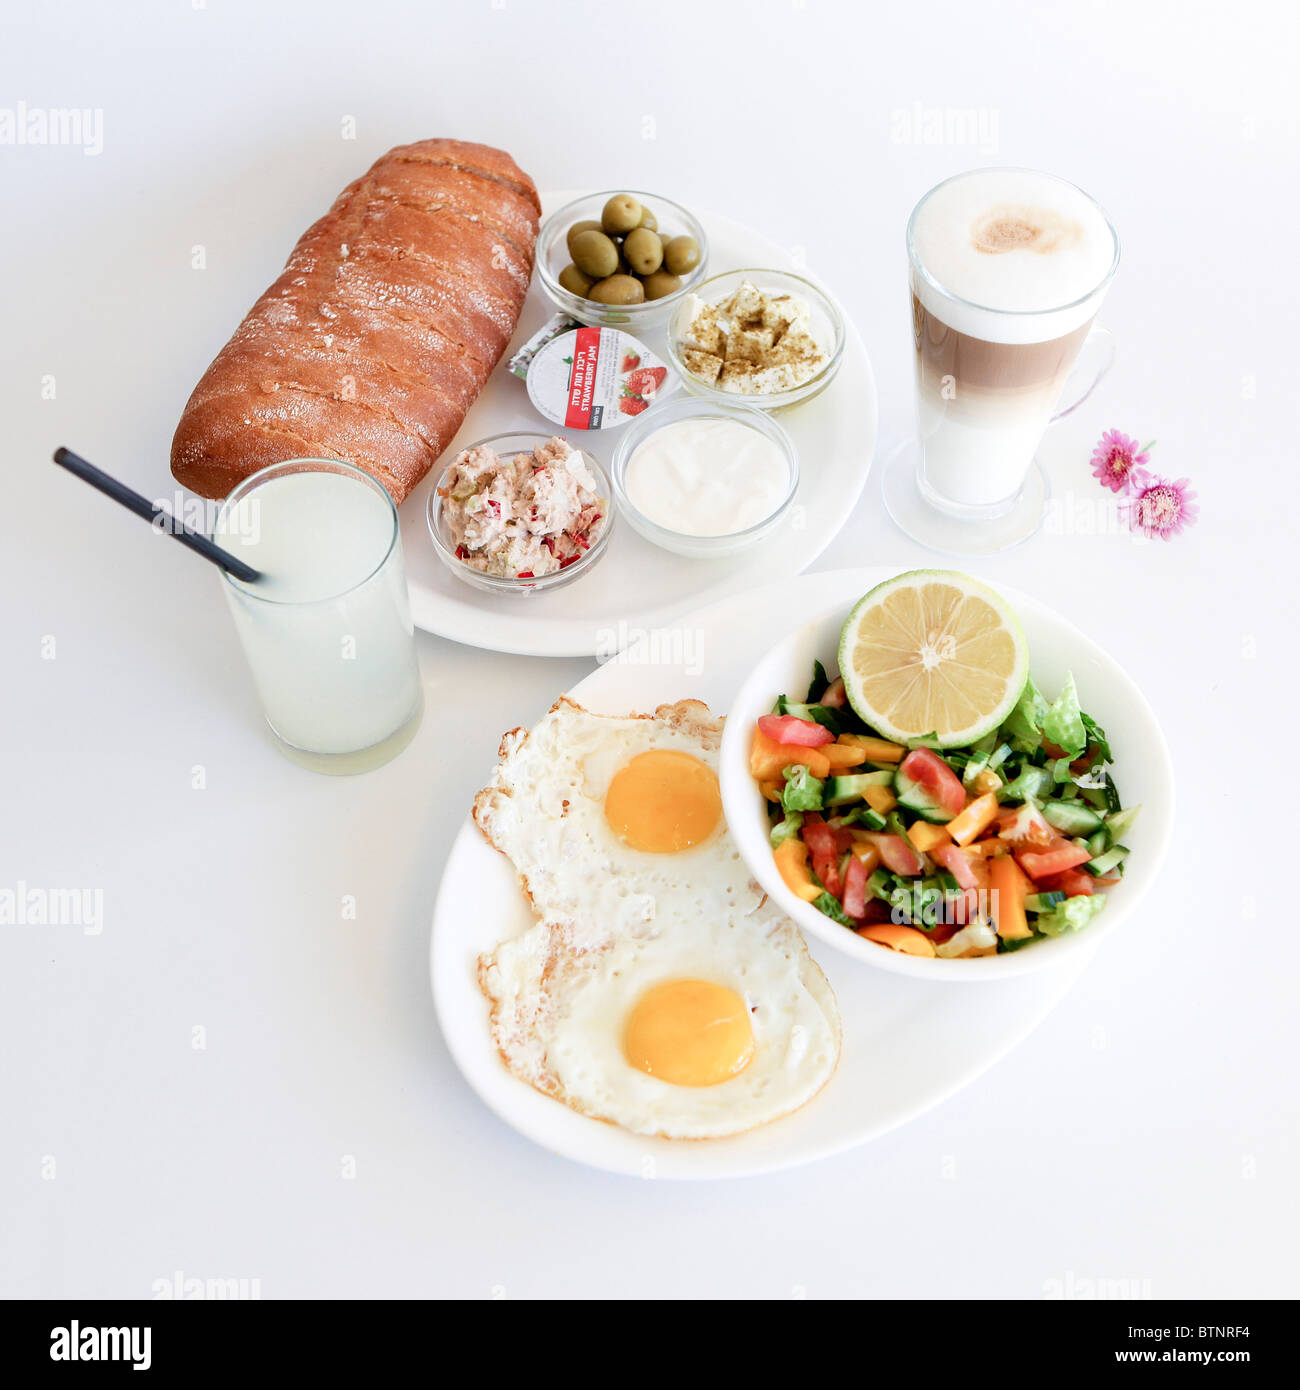 Traditionelle israelisches Frühstück mit zwei Spiegeleiern, gelben Käse, Salat, ein frisches Brötchen und eine Tasse cappuccino Stockfoto